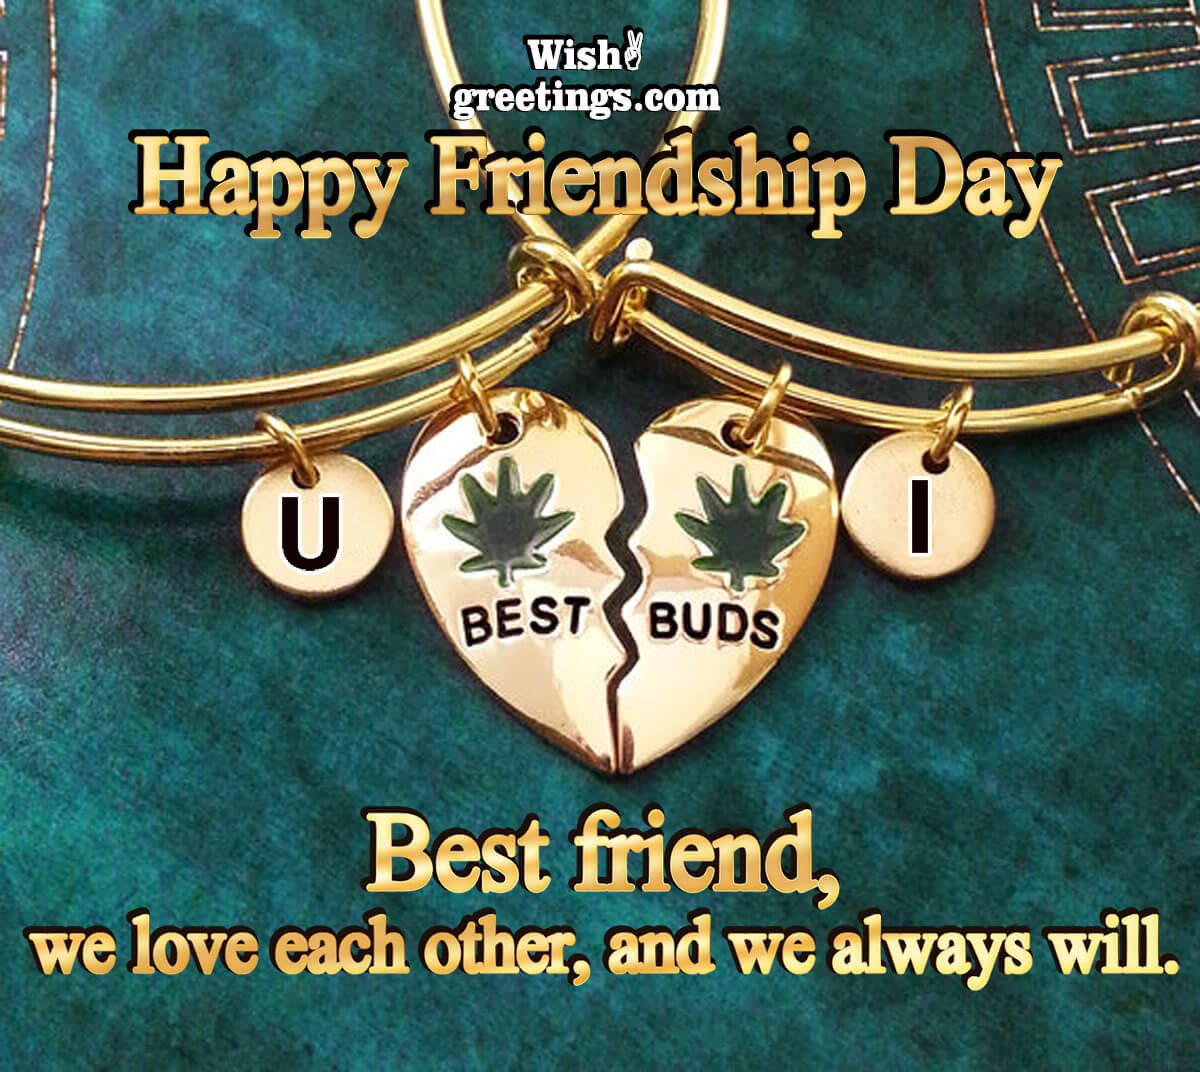 Happy Friendship Day Best Friend Image